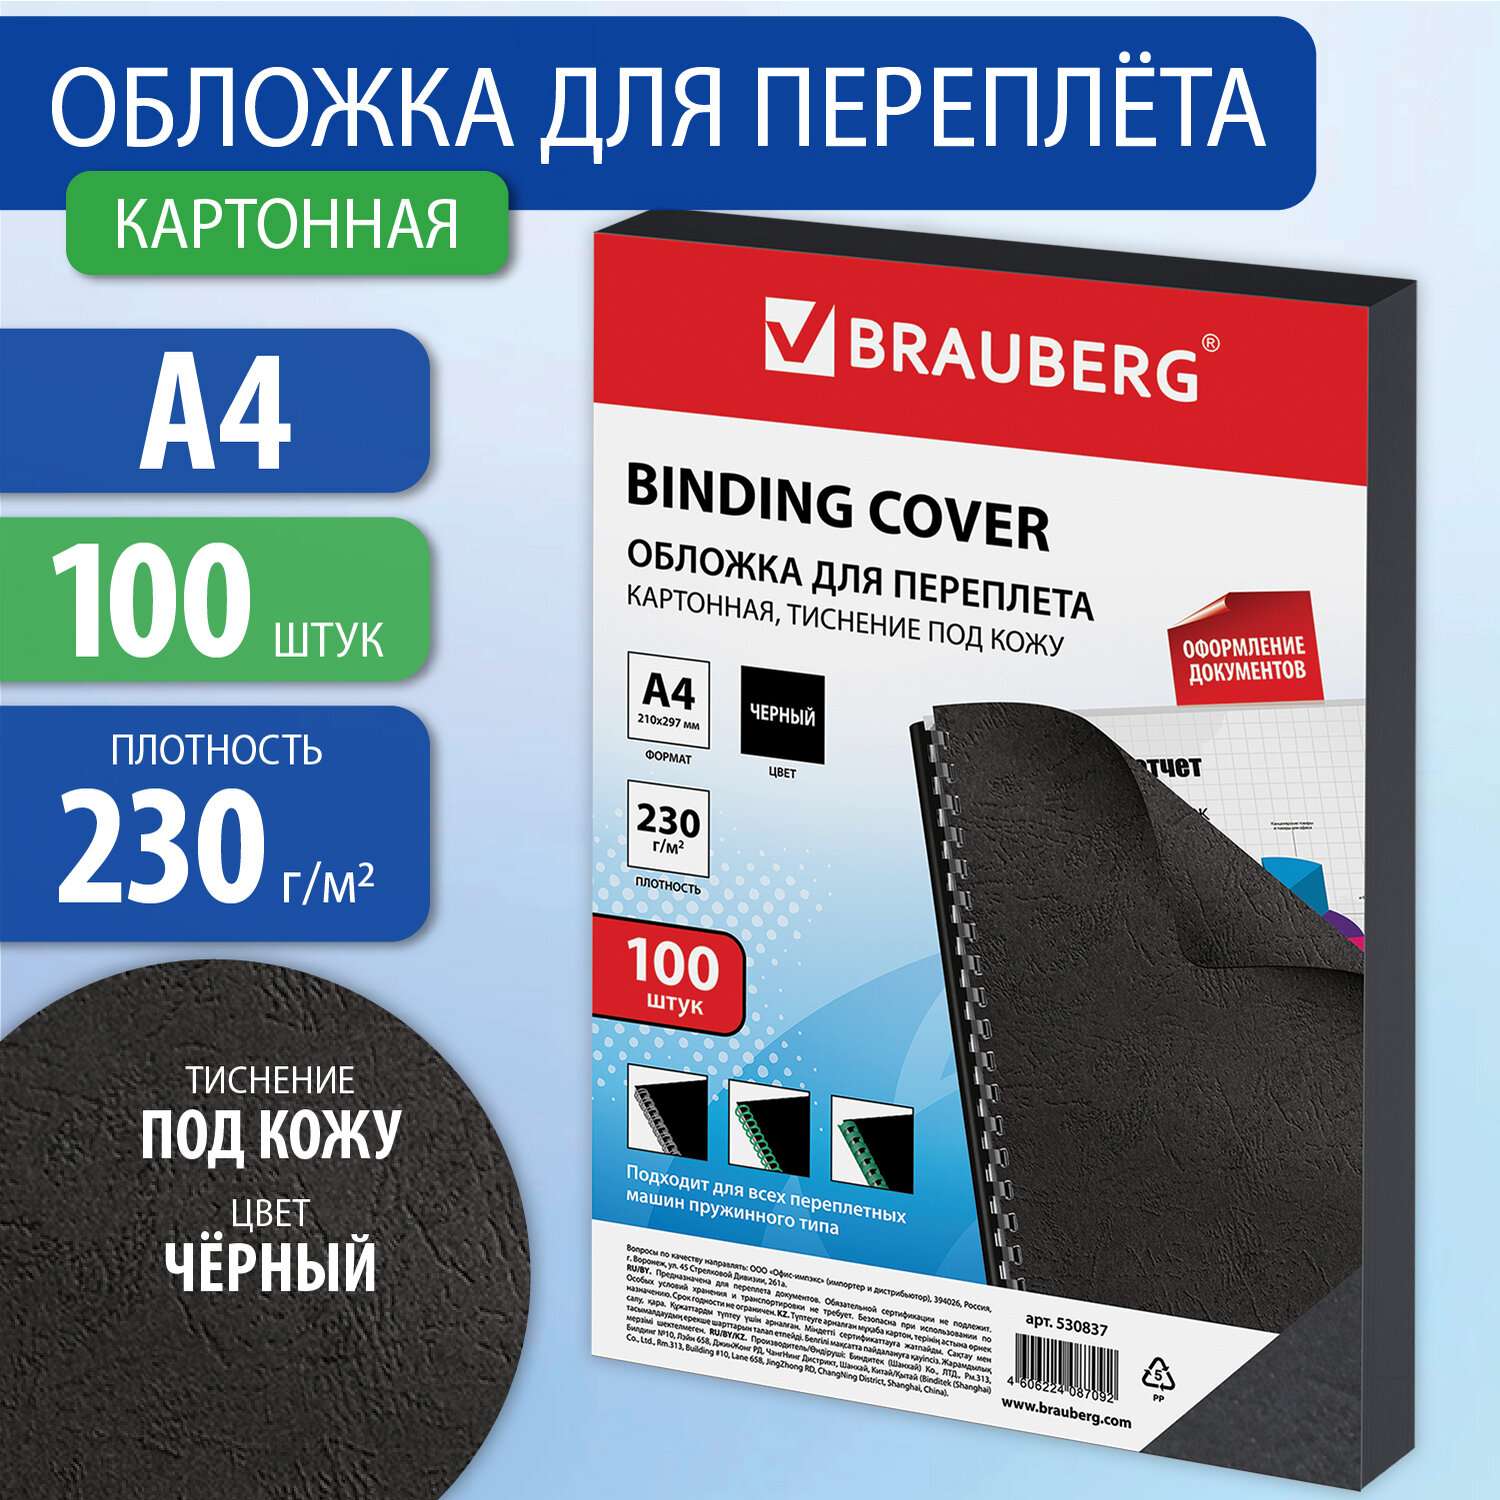 Обложки для переплета Brauberg картонные А4 набор 100 штук тиснение под кожу черные - фото 1